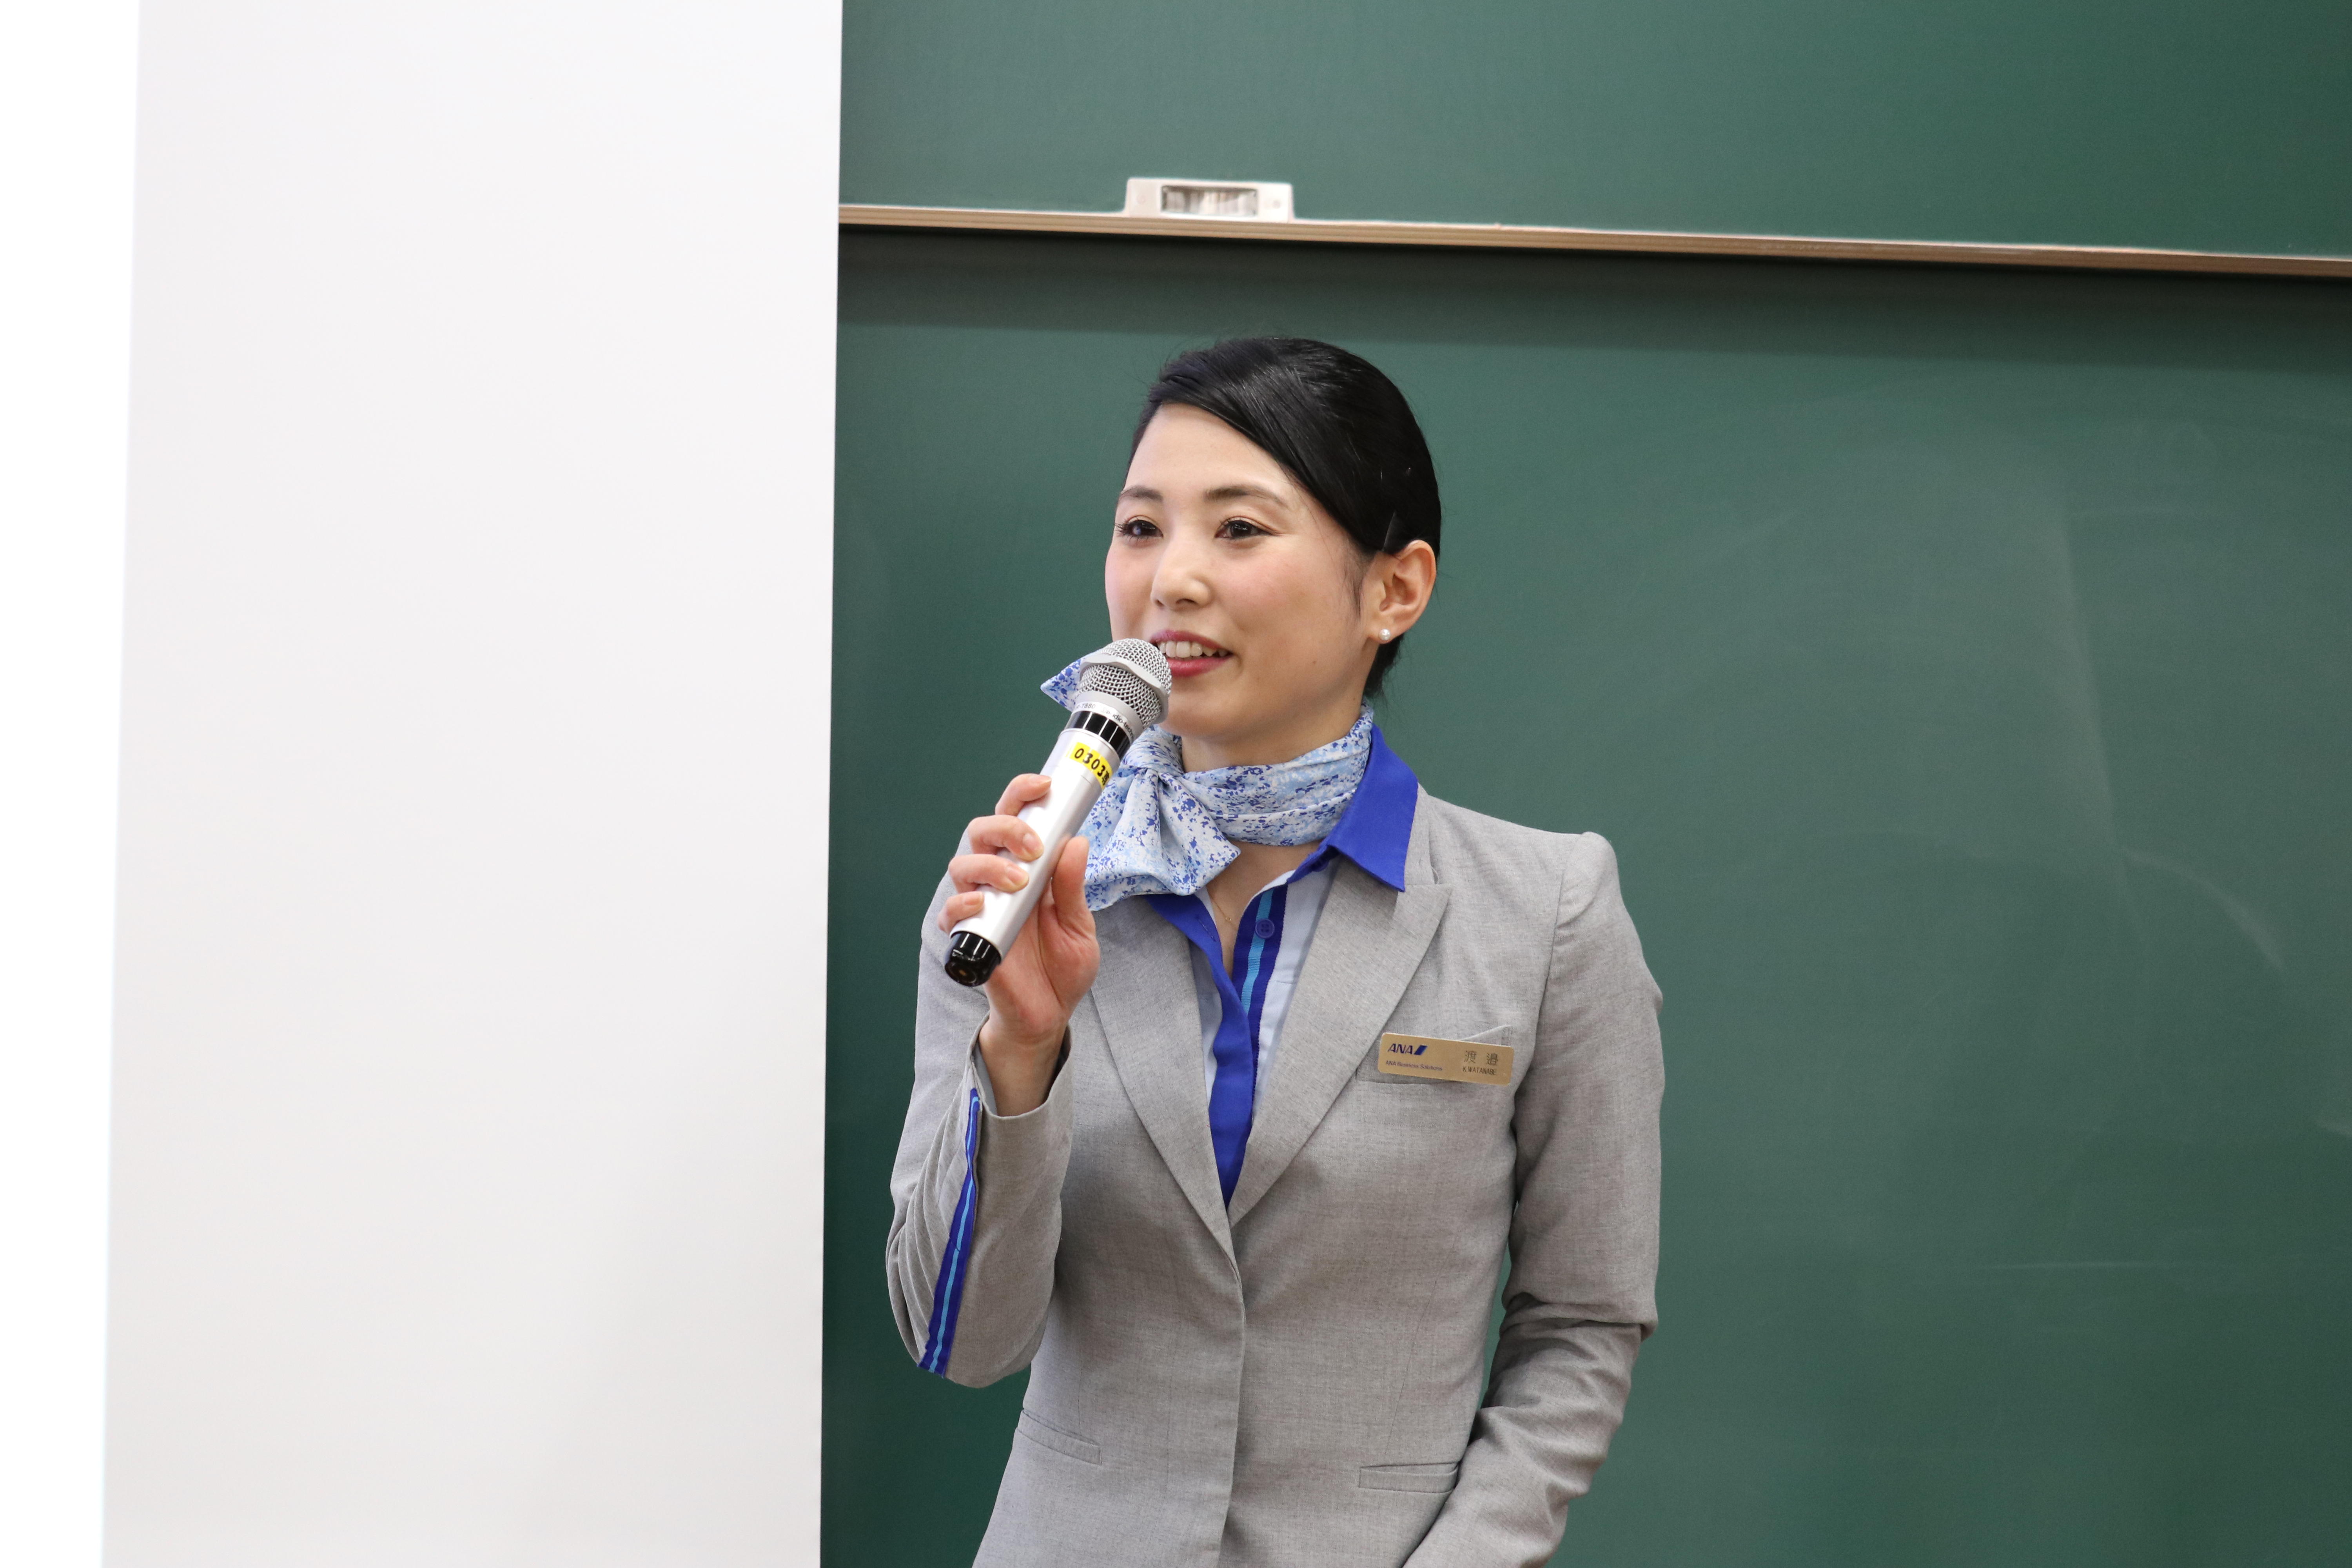 大阪産業大学国際学部がANAエアラインスクール「接遇＆マナー講座」を開催 -- 現役CAがあいさつの基本や話し方などについて講義